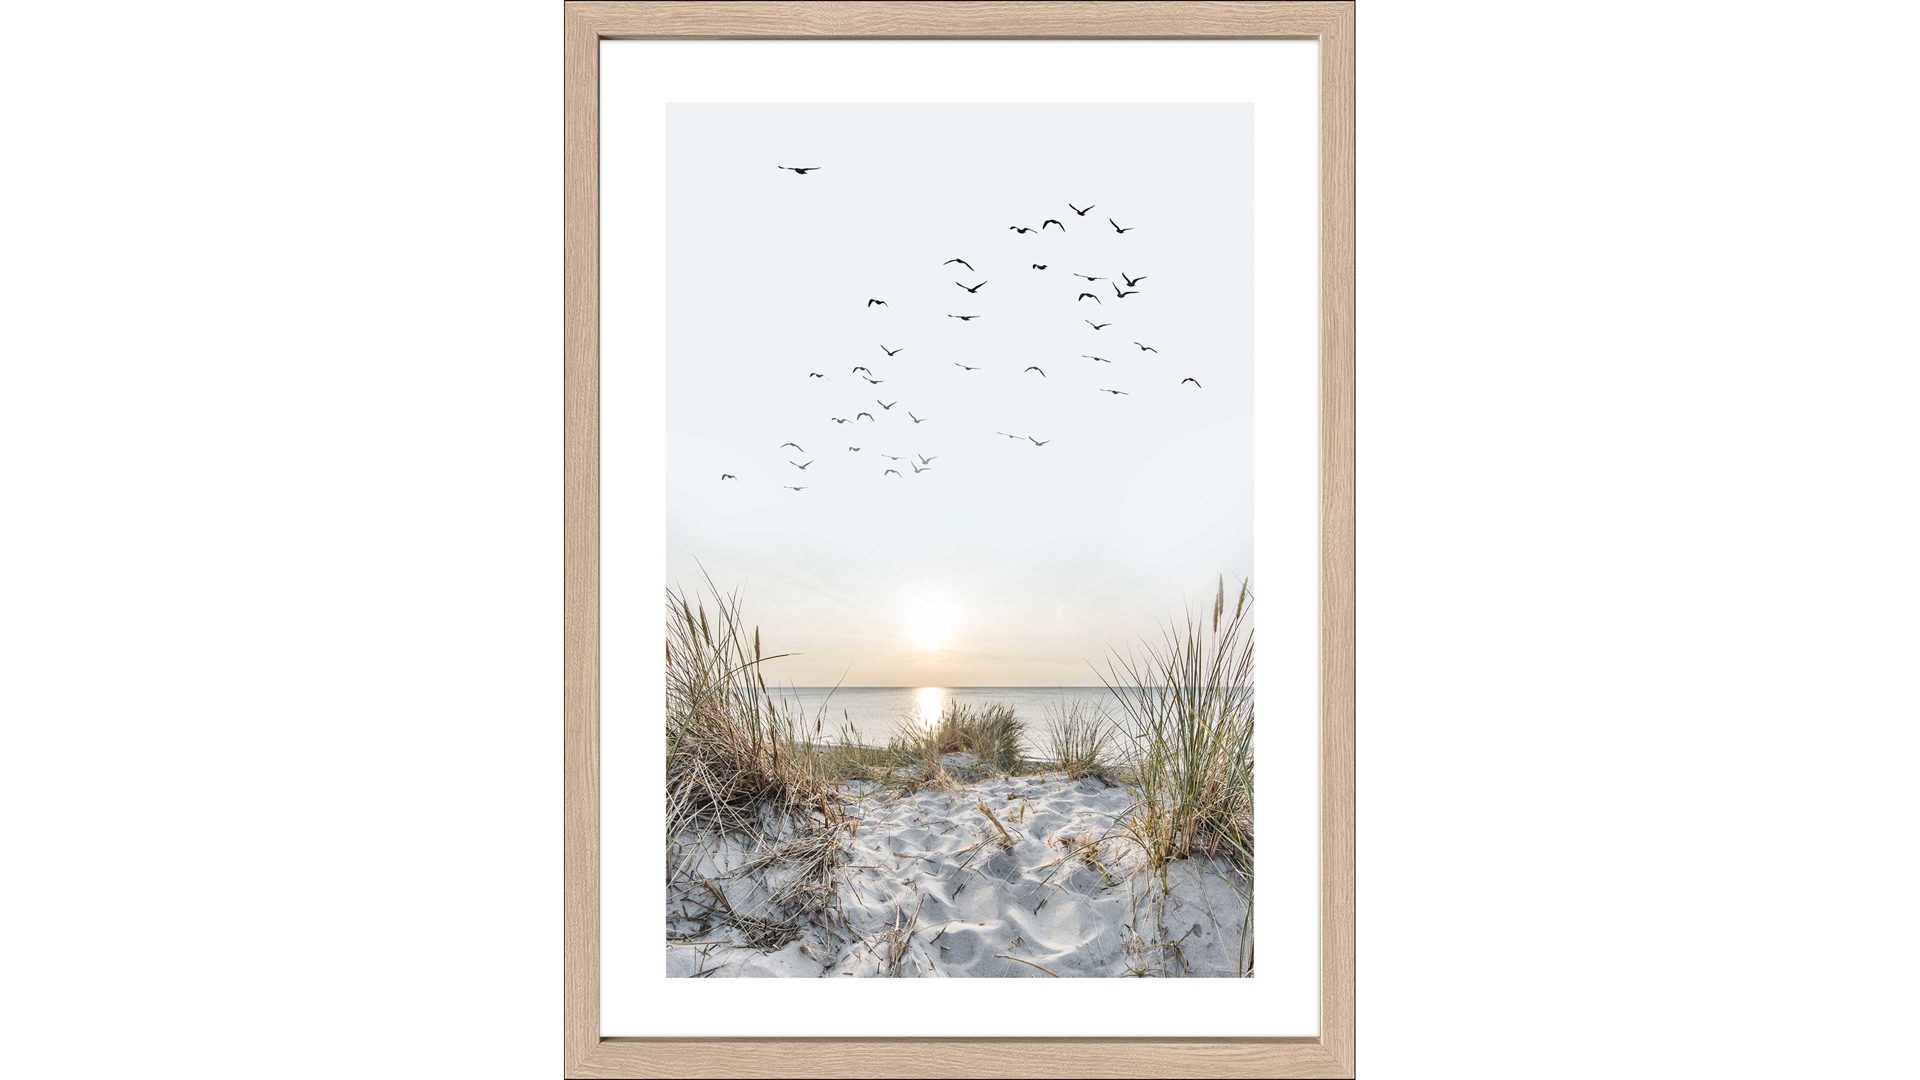 Kunstdruck Pro®art bilderpalette aus Karton / Papier / Pappe in Weiß PRO®ART Kunstdruck Nordic Beach Atmosphere I Eiche, Strandmotiv - ca. 55 x 75 cm